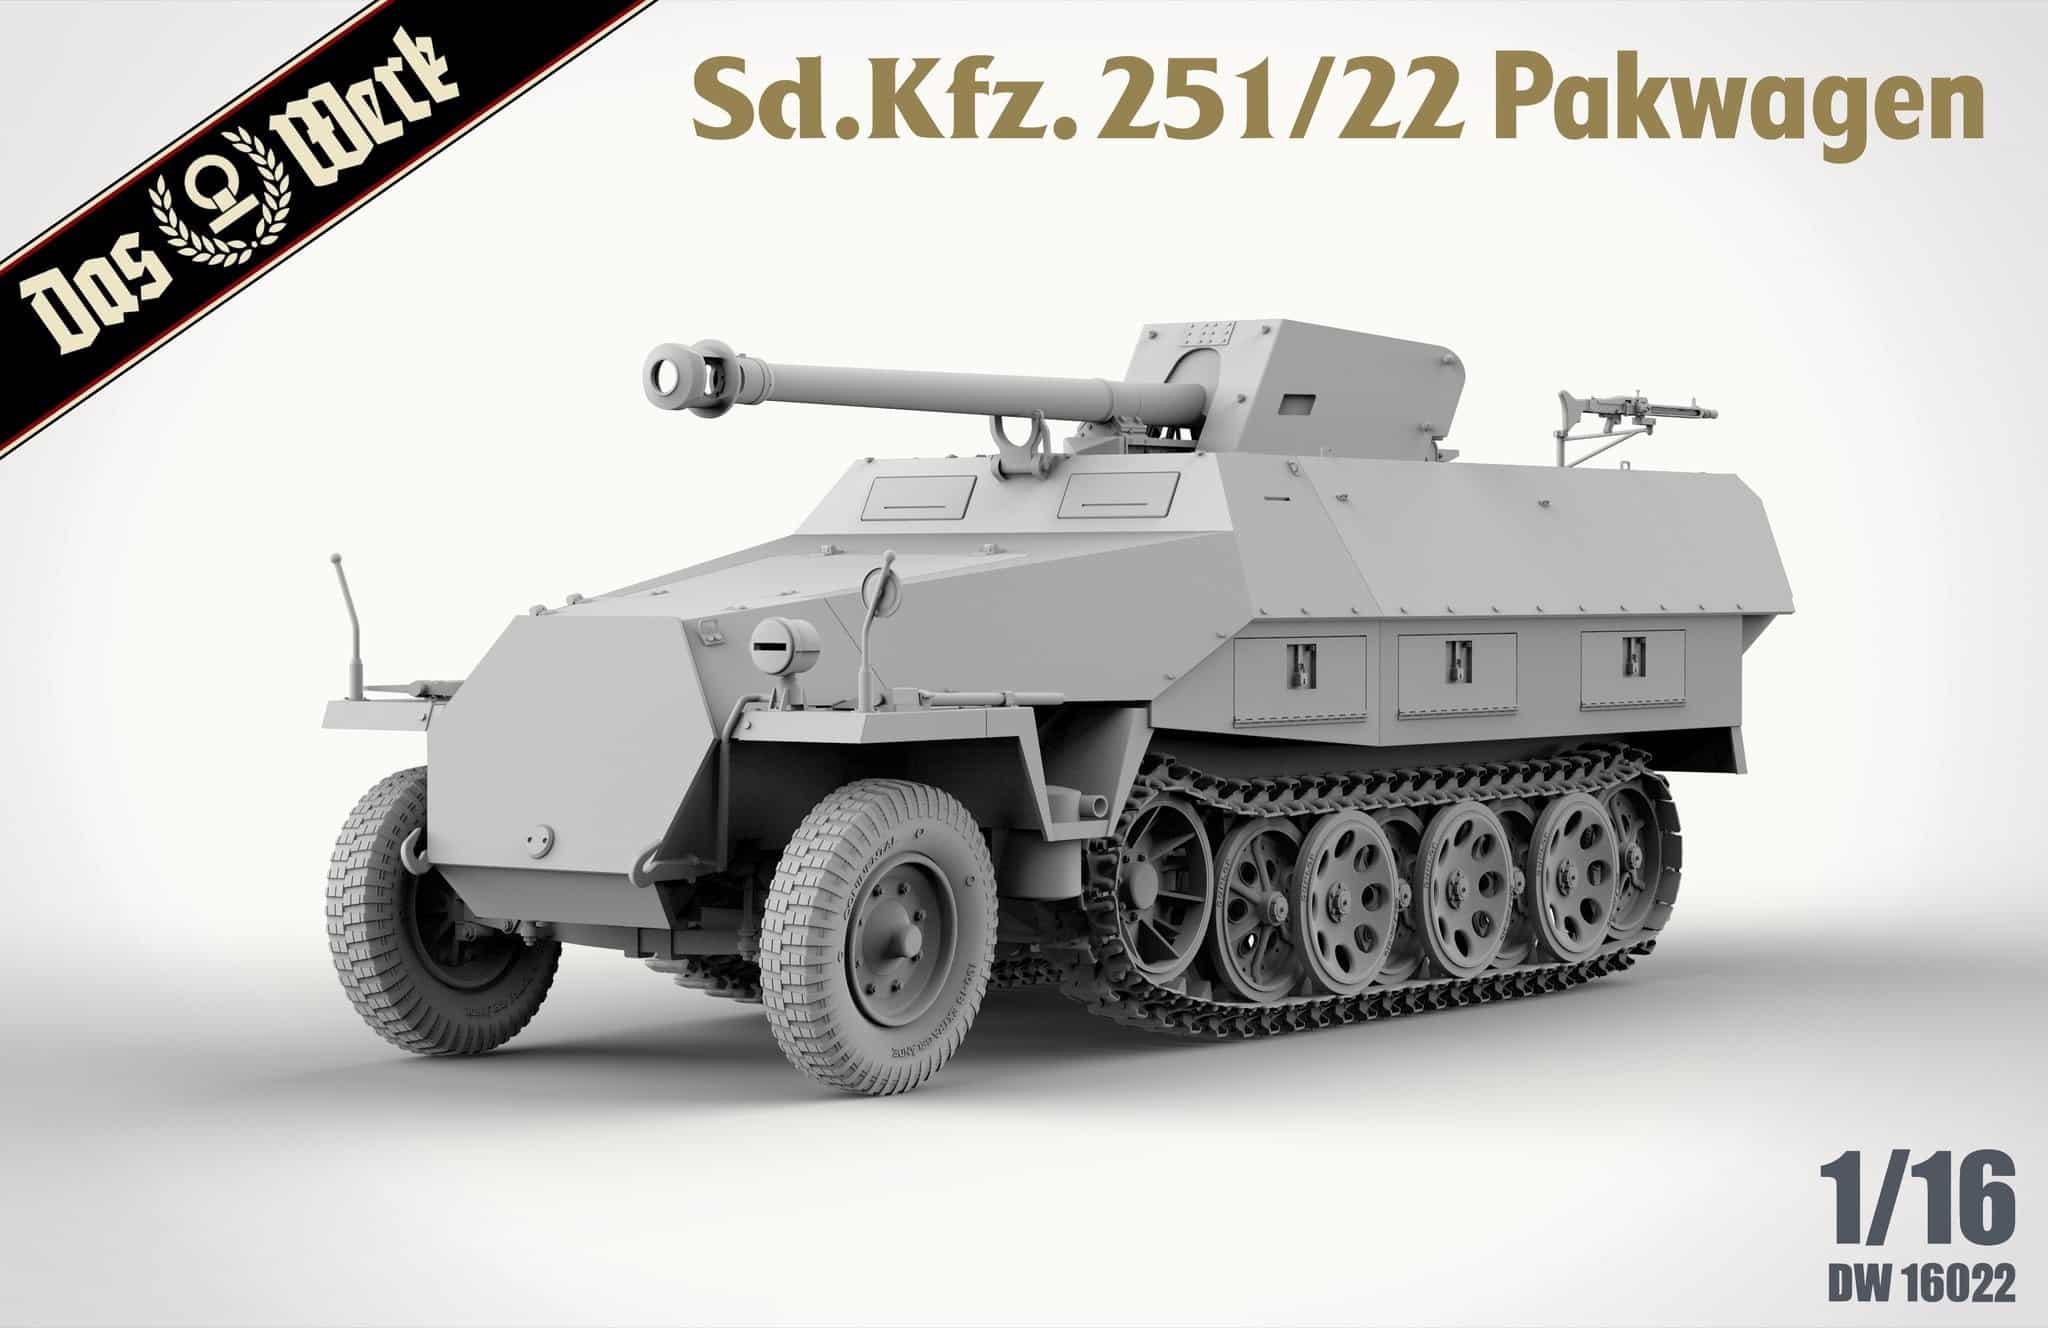 Sd.Kfz. 251/22 Pakwagen from Das Werk